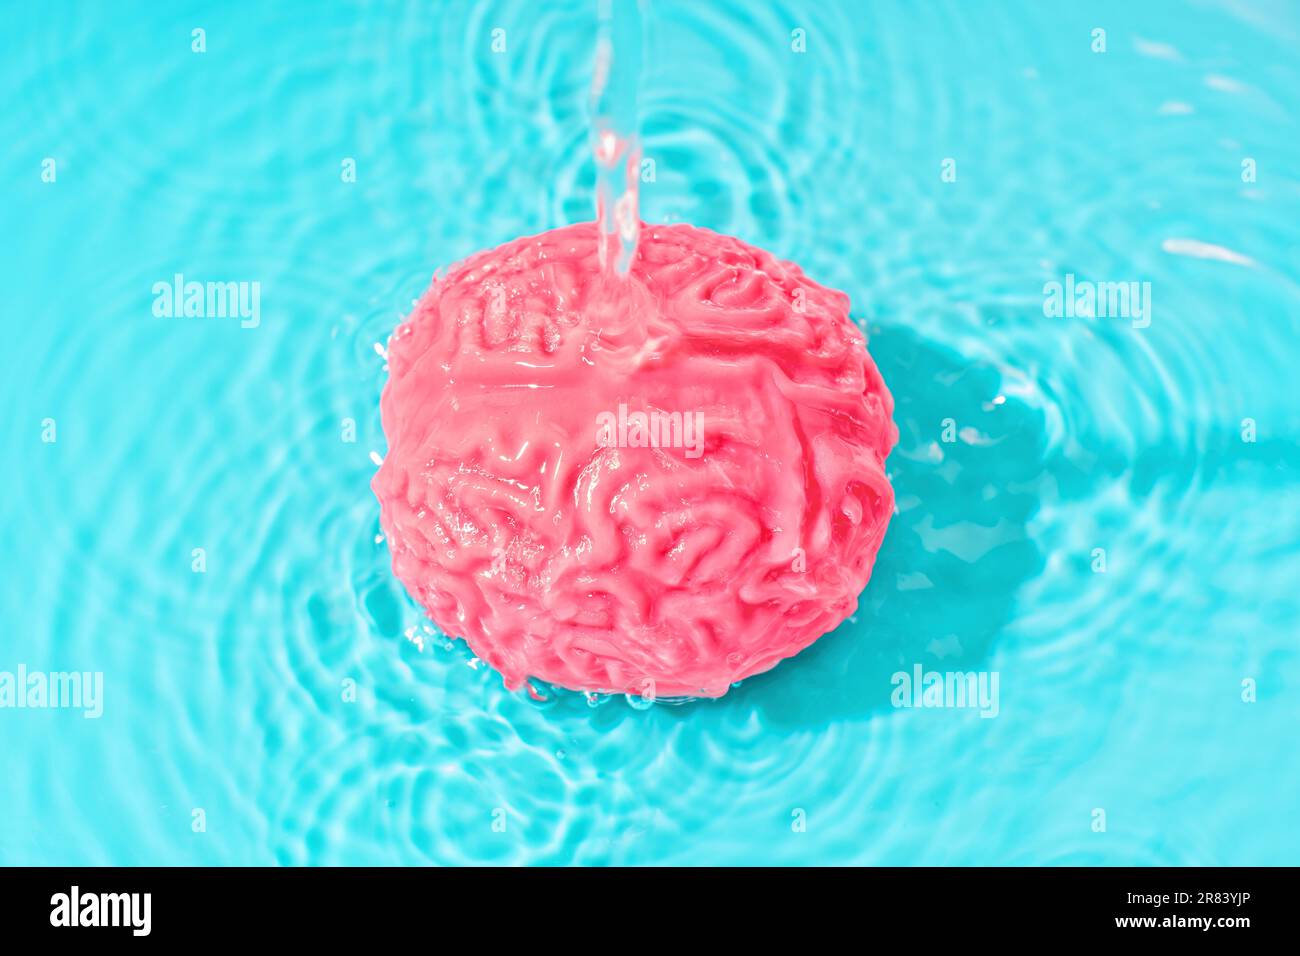 Ein stetiger Wasserstrom fließt auf ein gelartiges Modell des menschlichen Gehirns, das in Wasser vor einem ruhigen blauen Hintergrund eingetaucht ist. Manipulatio Stockfoto